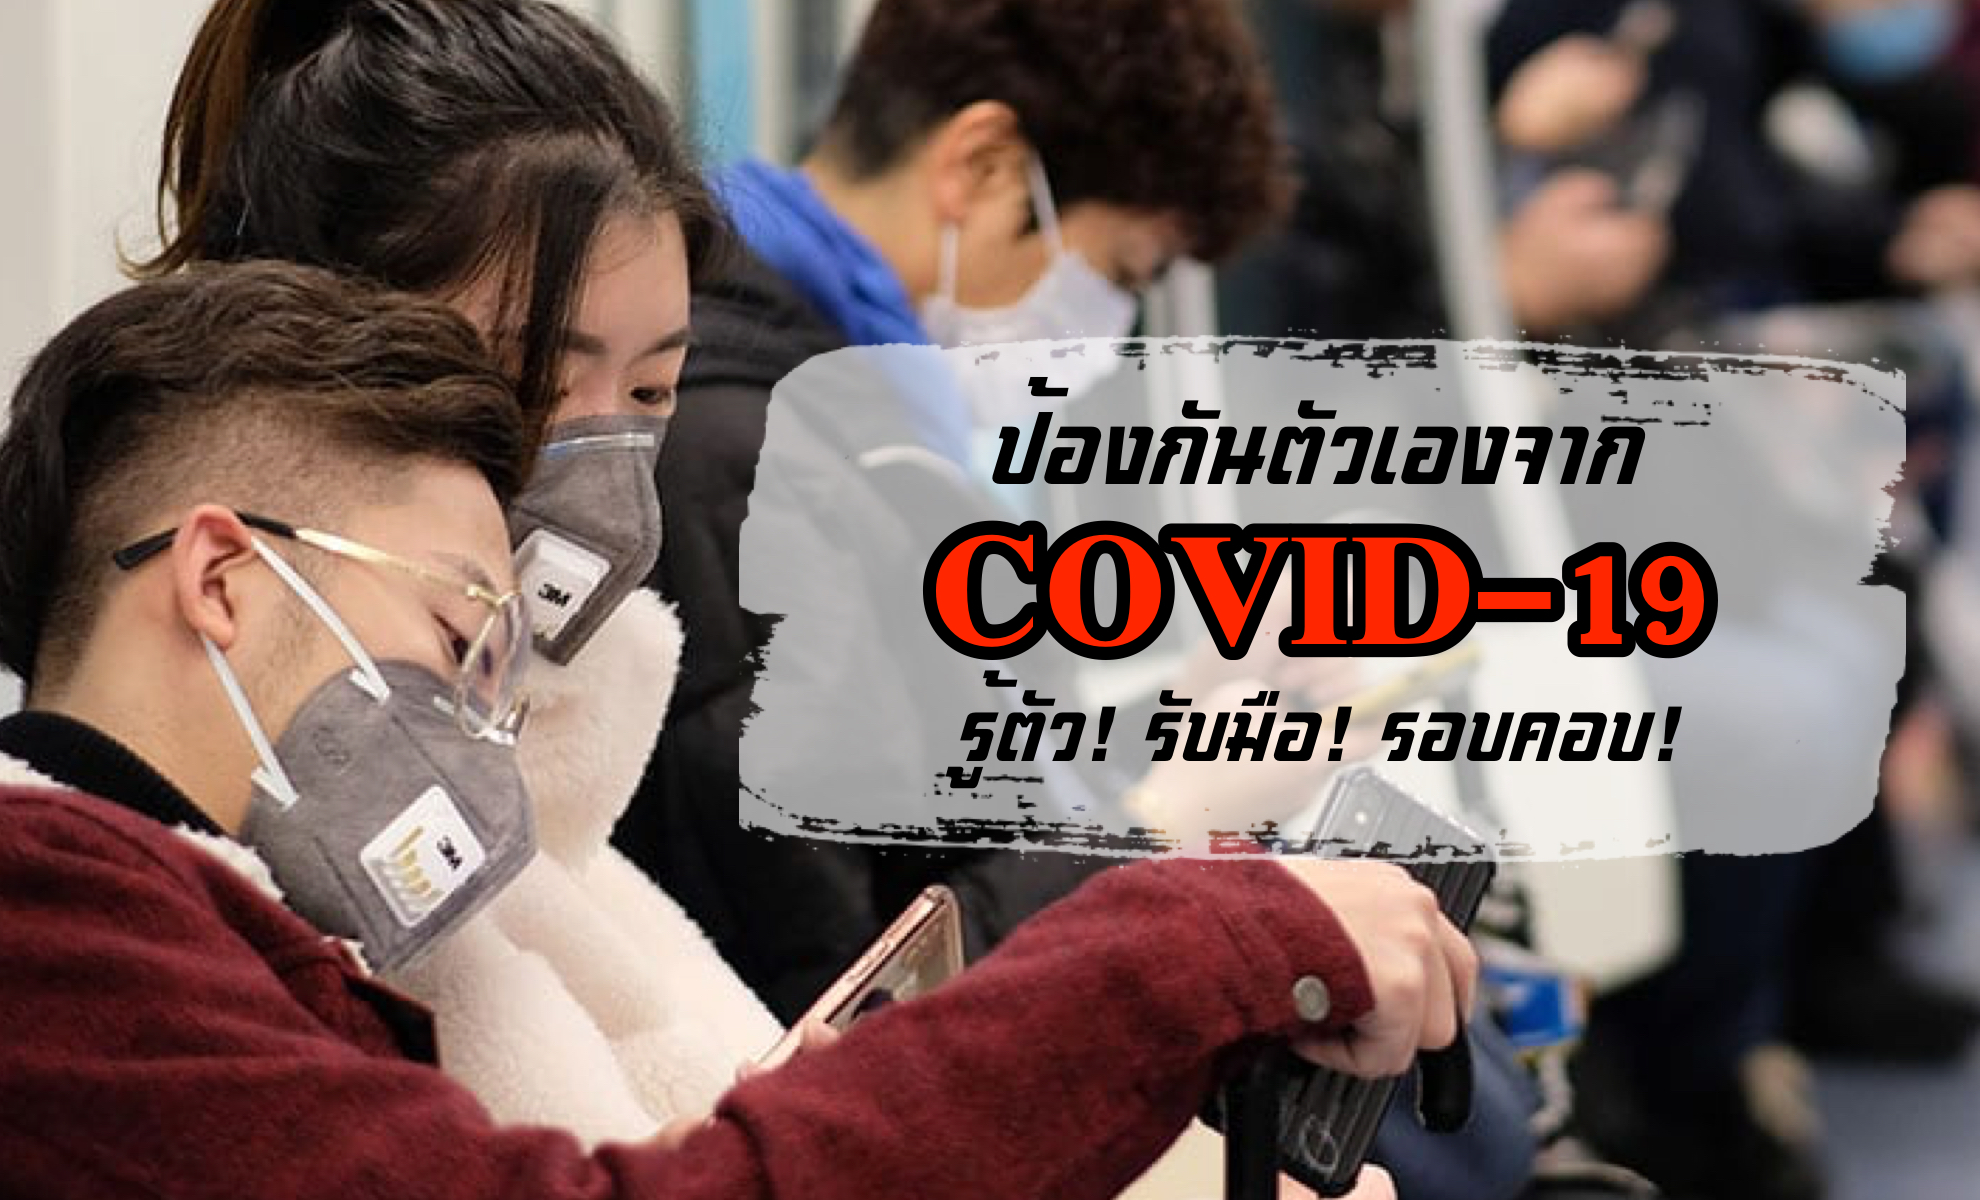 ป้องกันตัวเองจากไวรัสโคโรน่า COVID-19 รู้ตัว! รับมือ! รอบคอบ! ศึกษาไว้ปลอดภัยกว่า